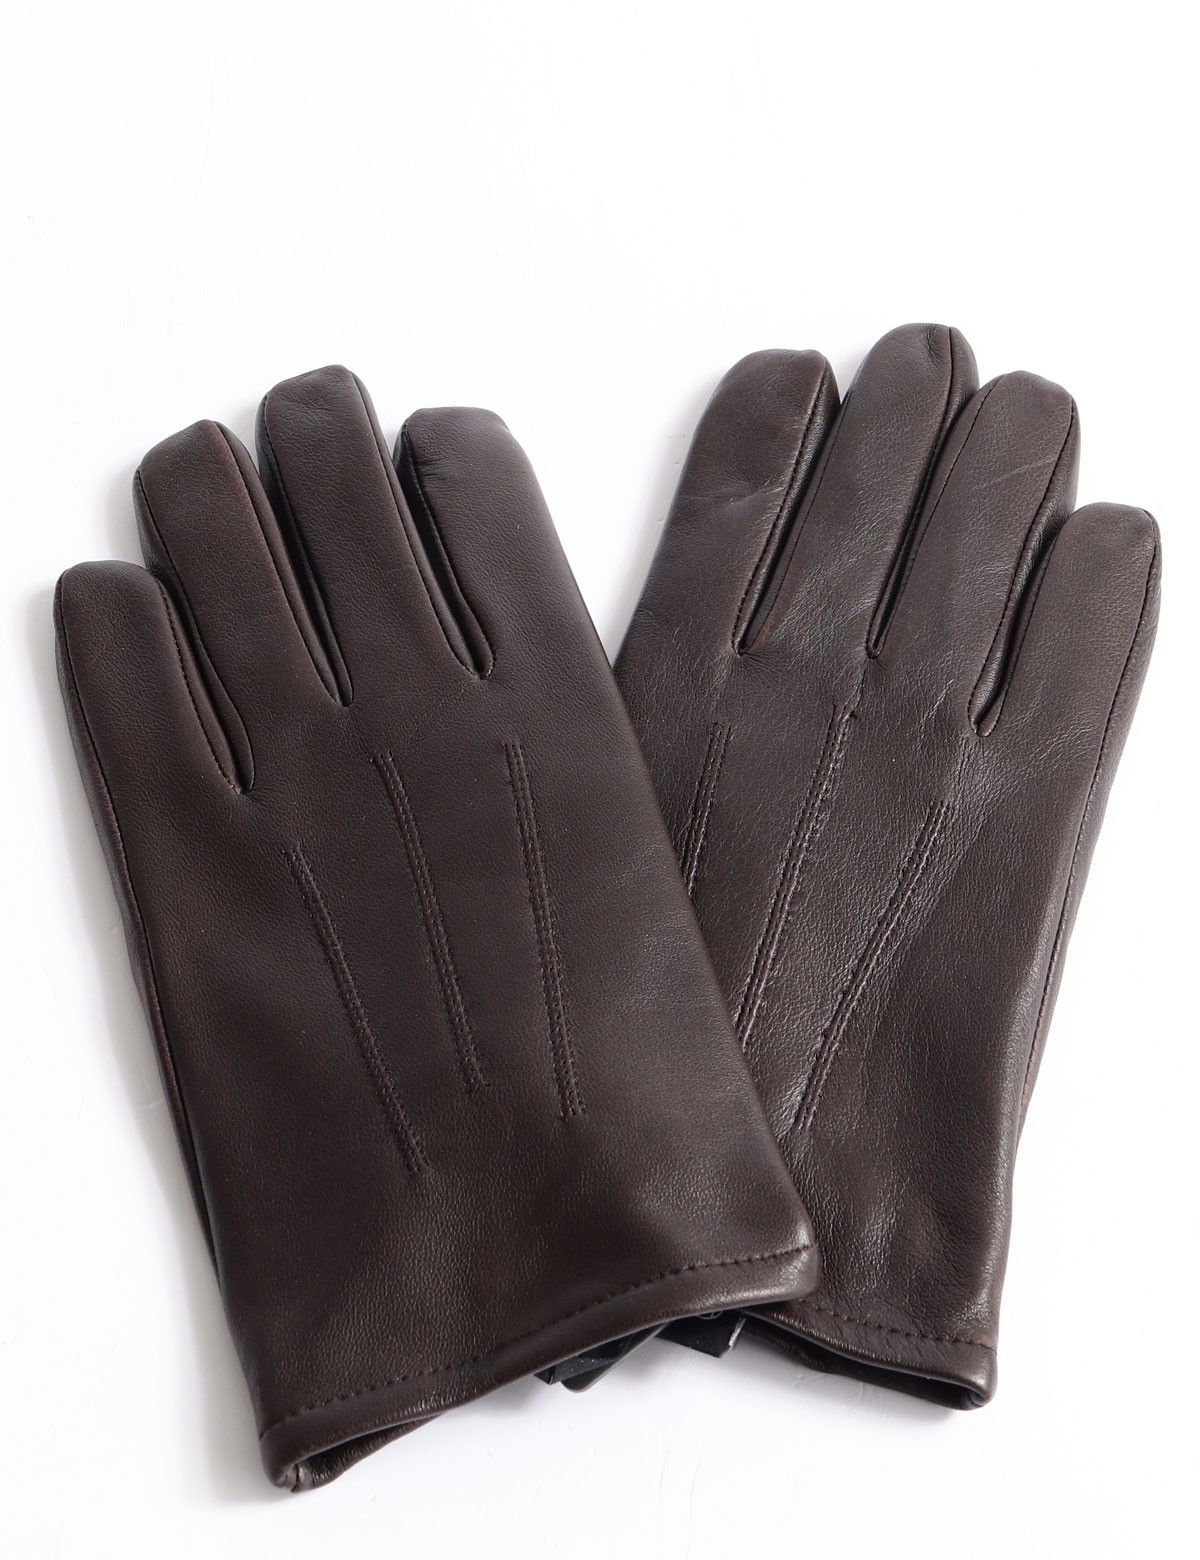 Liam Group Kessler gloves | touch Scalia